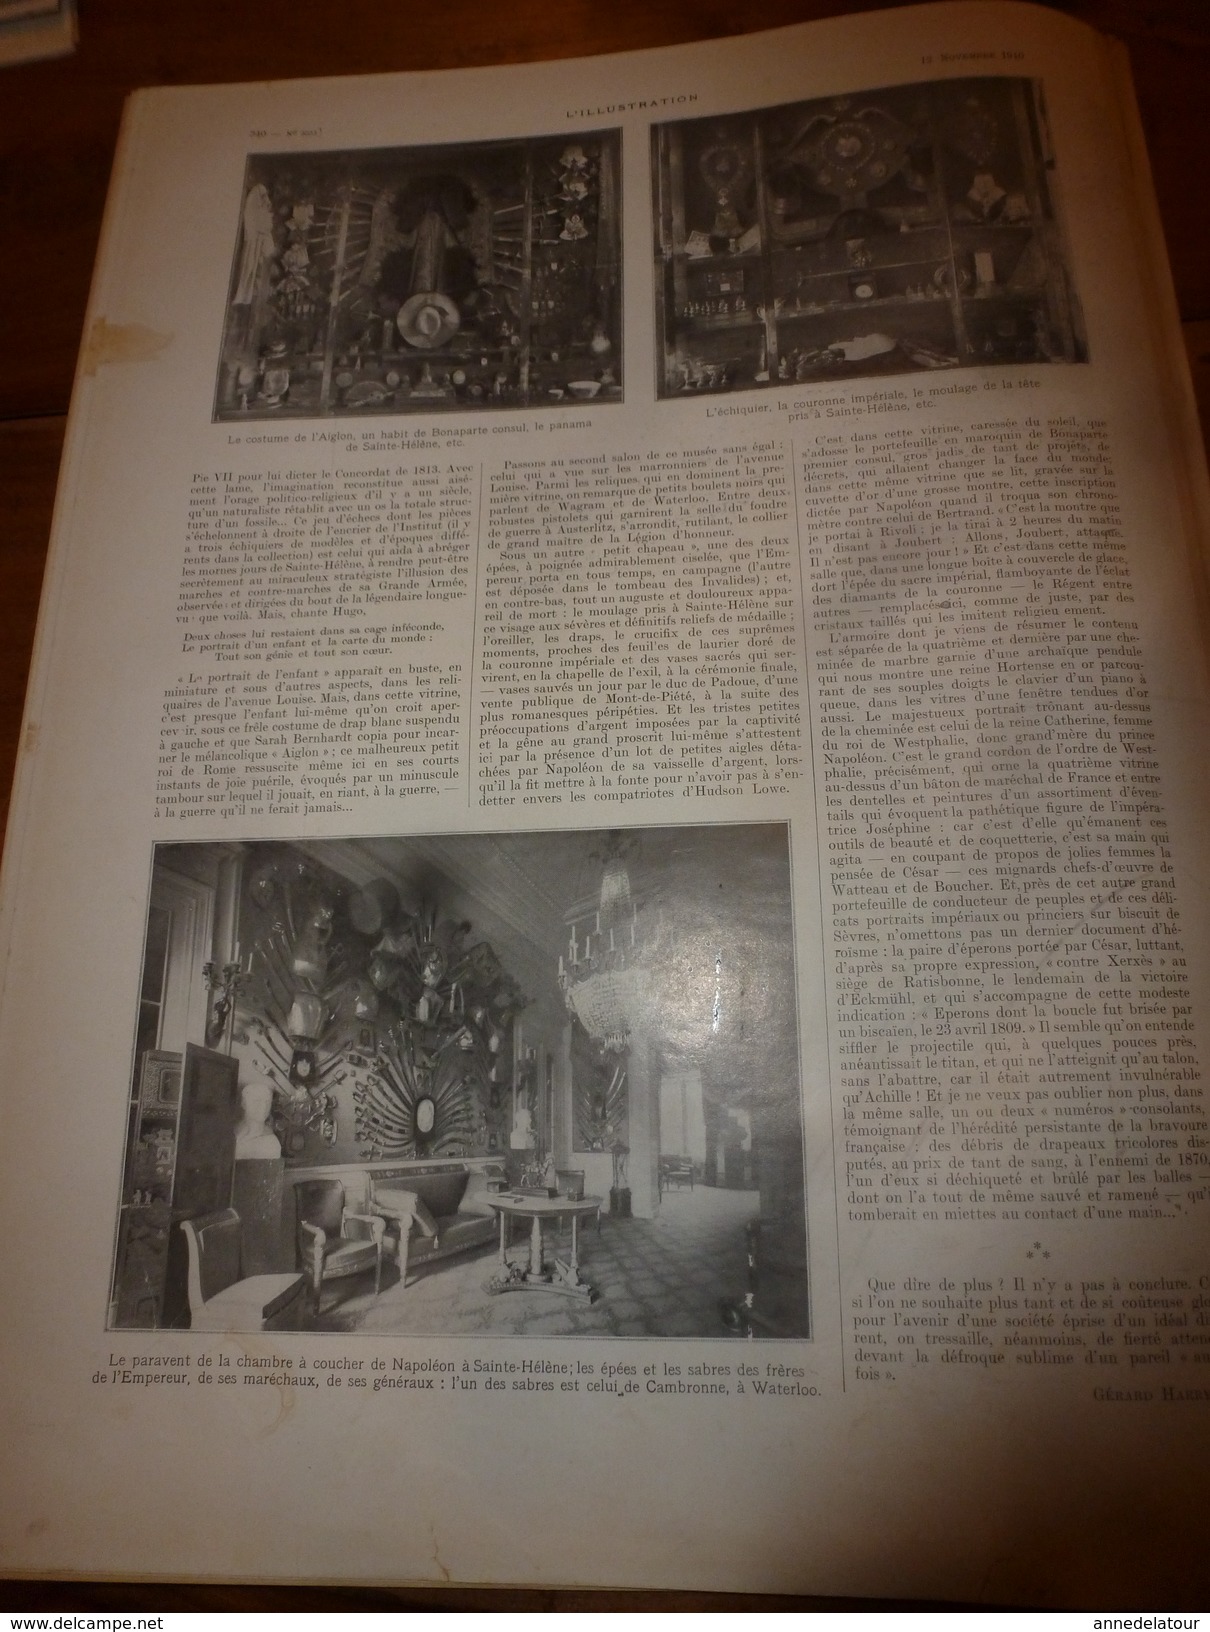 1910 L'ILLUSTRATION:Belgique;Nos noirs;Expo Chrysanthème;Collision navire Brighton;Sculpture photographique;Reliques;etc